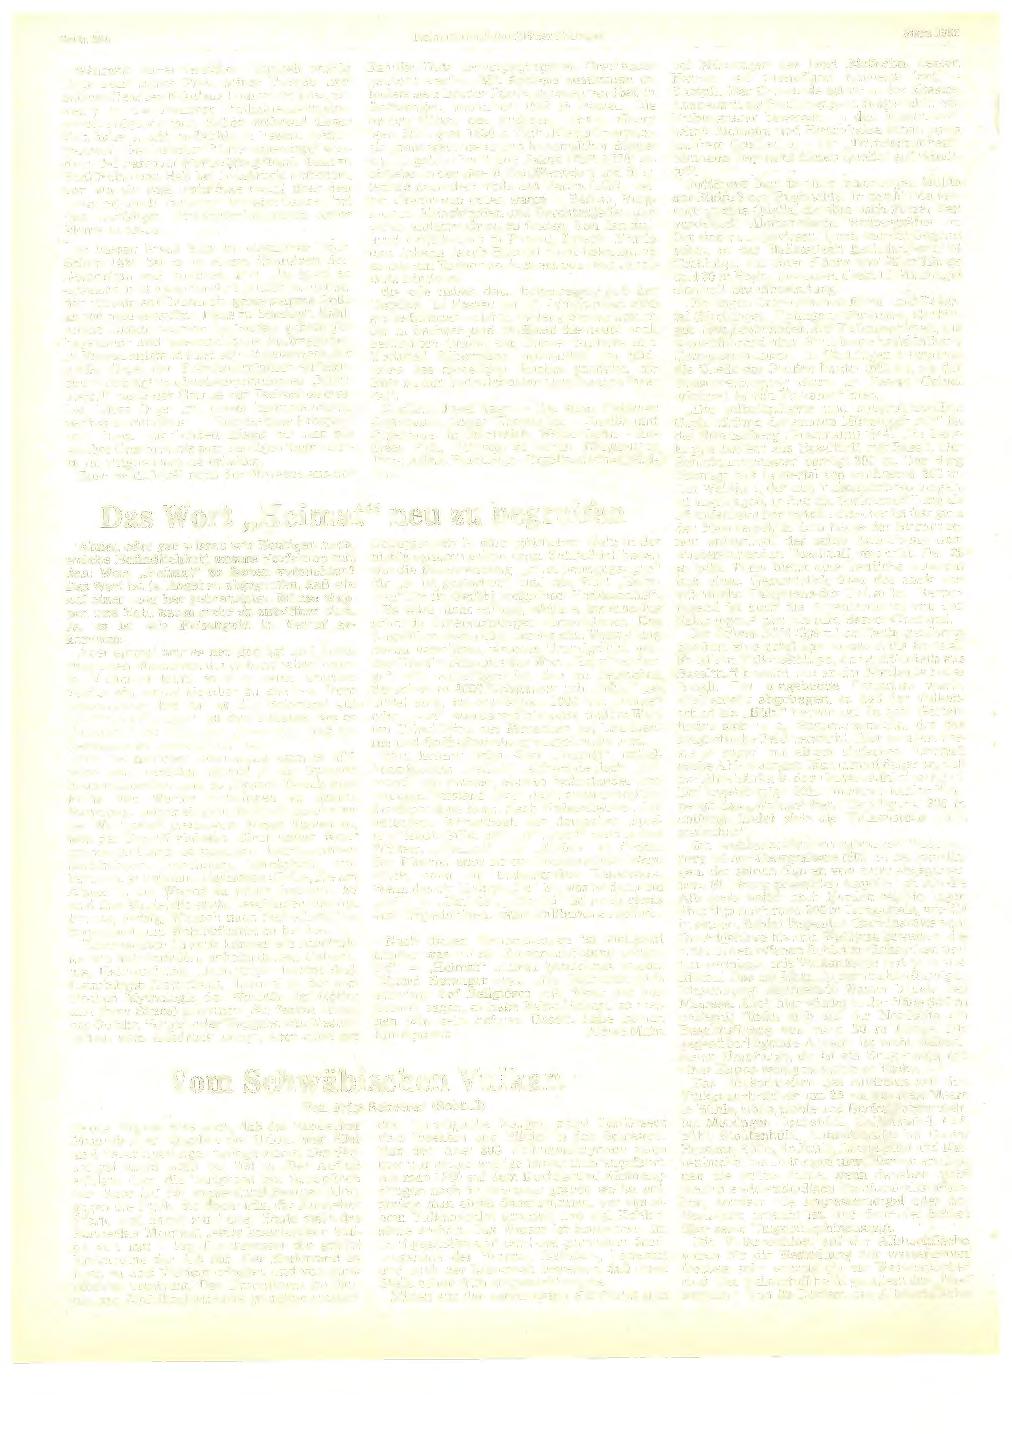 Seite 394 Heimatkundliehe Blätter Balingen März 1983 Während seiner Innicher Tätigkeit wurde Butz samt seiner Frau, seiner Tochter und seinem Gesellen Nikolaus Lembricht (aus "Saxen") in die Innicher